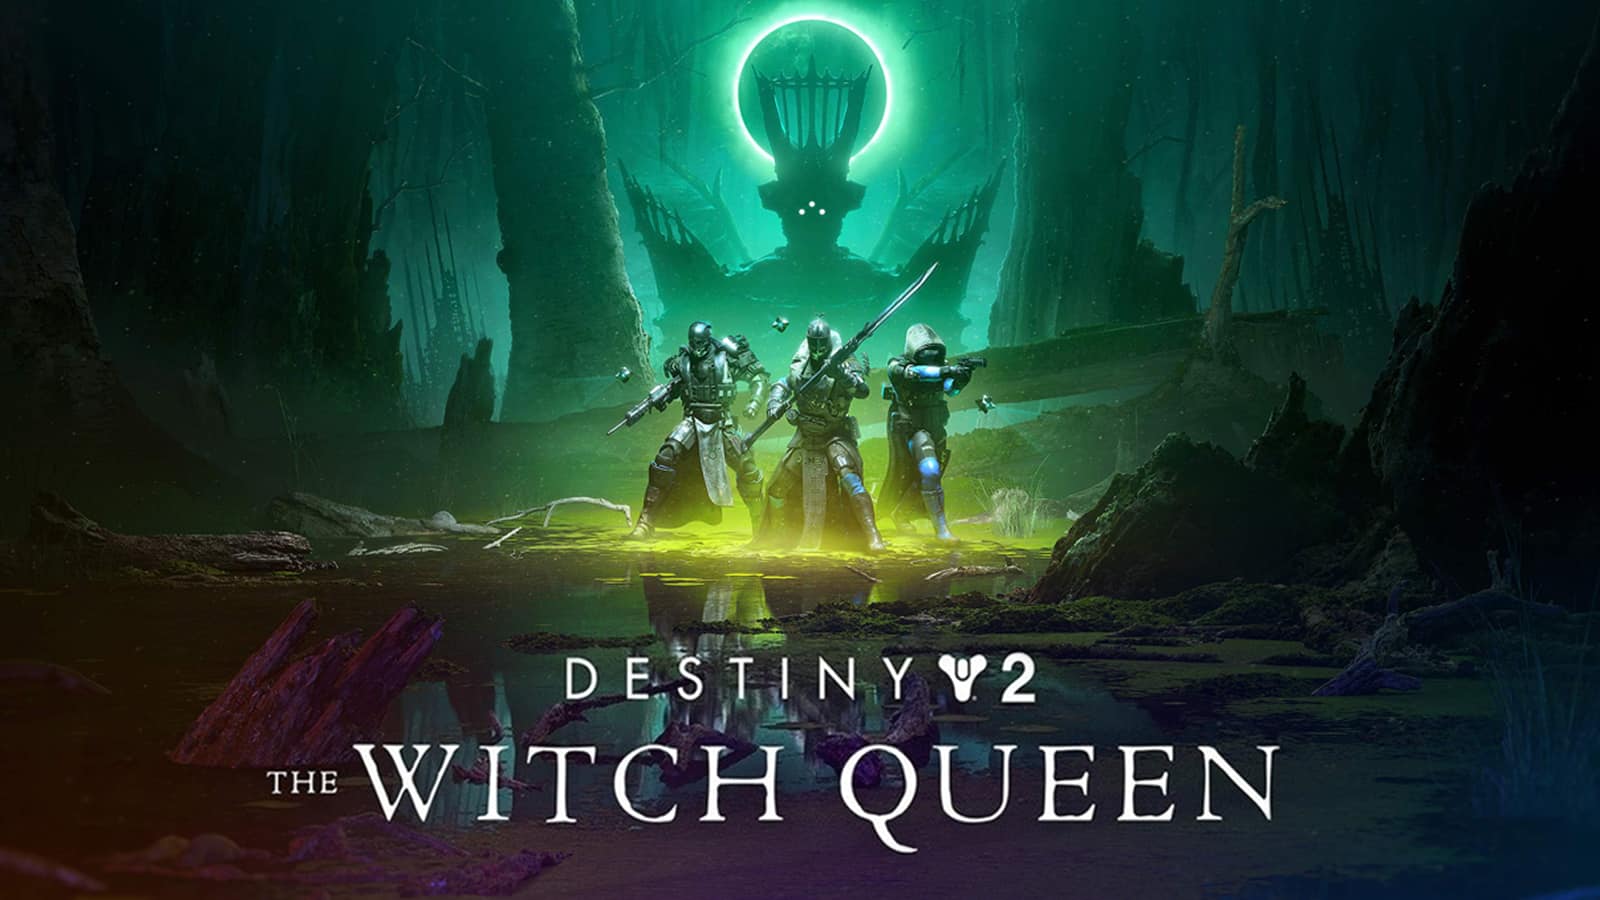 Destiny 2 The Witch Queen Expansion Lanzamiento de lanzamiento Savathun Story Trailer fugas más